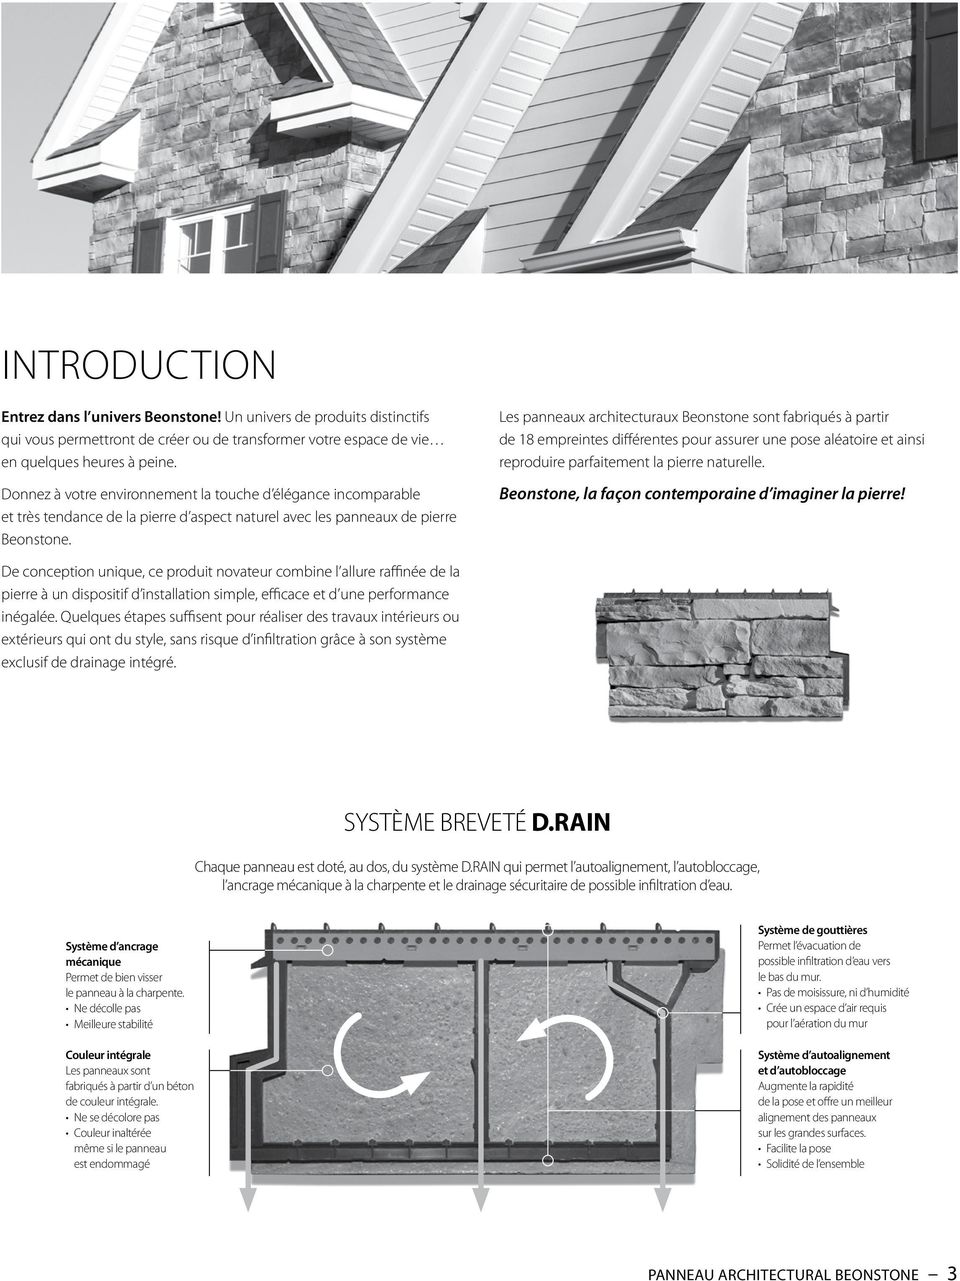 Les panneaux architecturaux Beonstone sont fabriqués à partir de 18 empreintes différentes pour assurer une pose aléatoire et ainsi reproduire parfaitement la pierre naturelle.